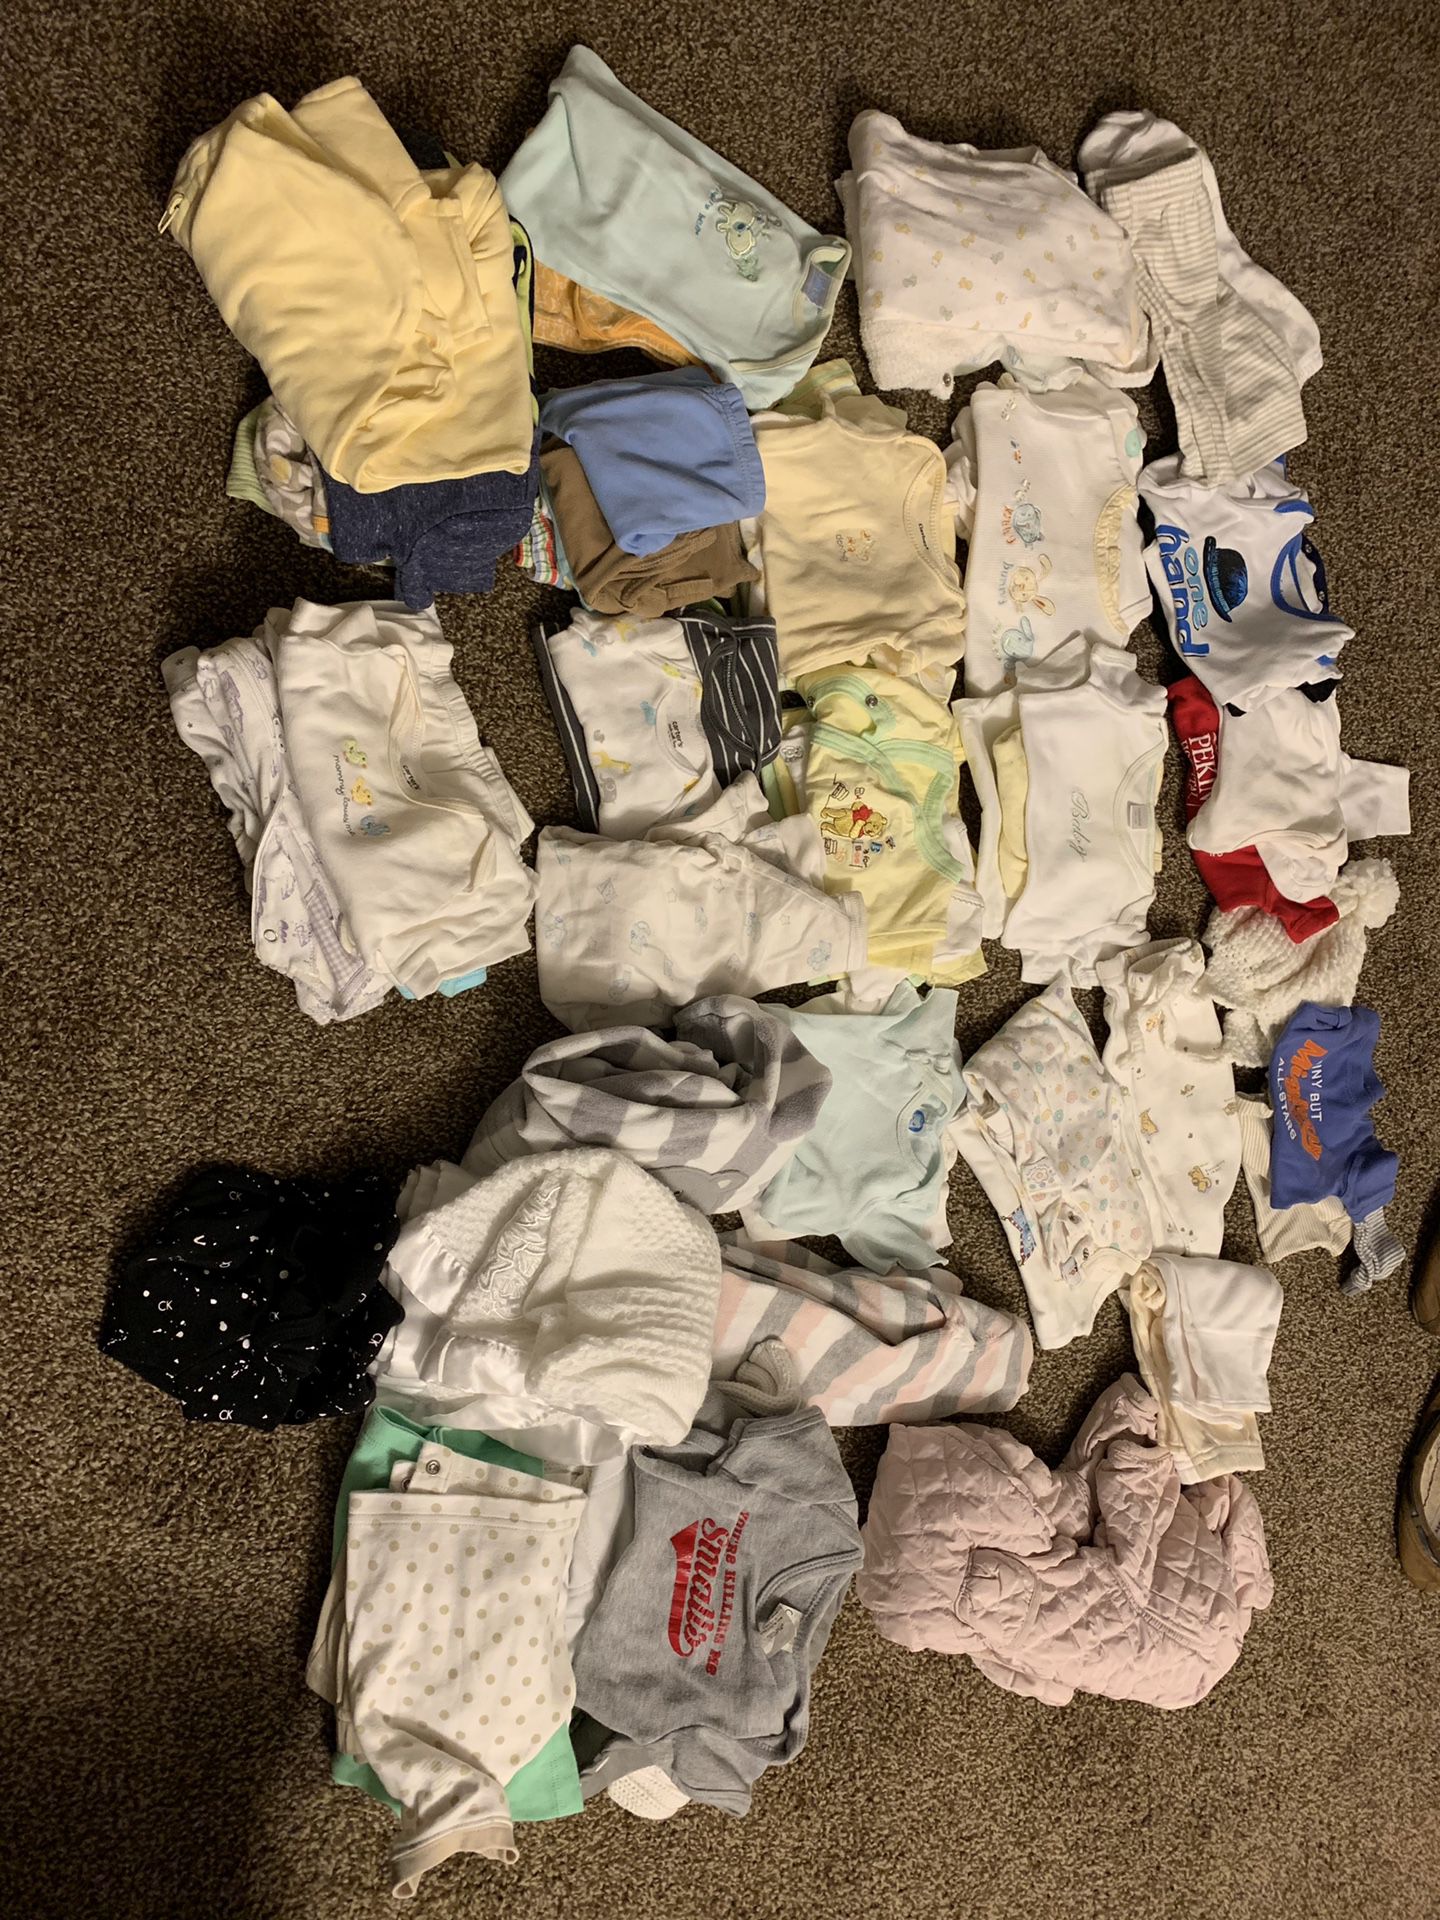 Baby boy clothes. Newborn - 3 months